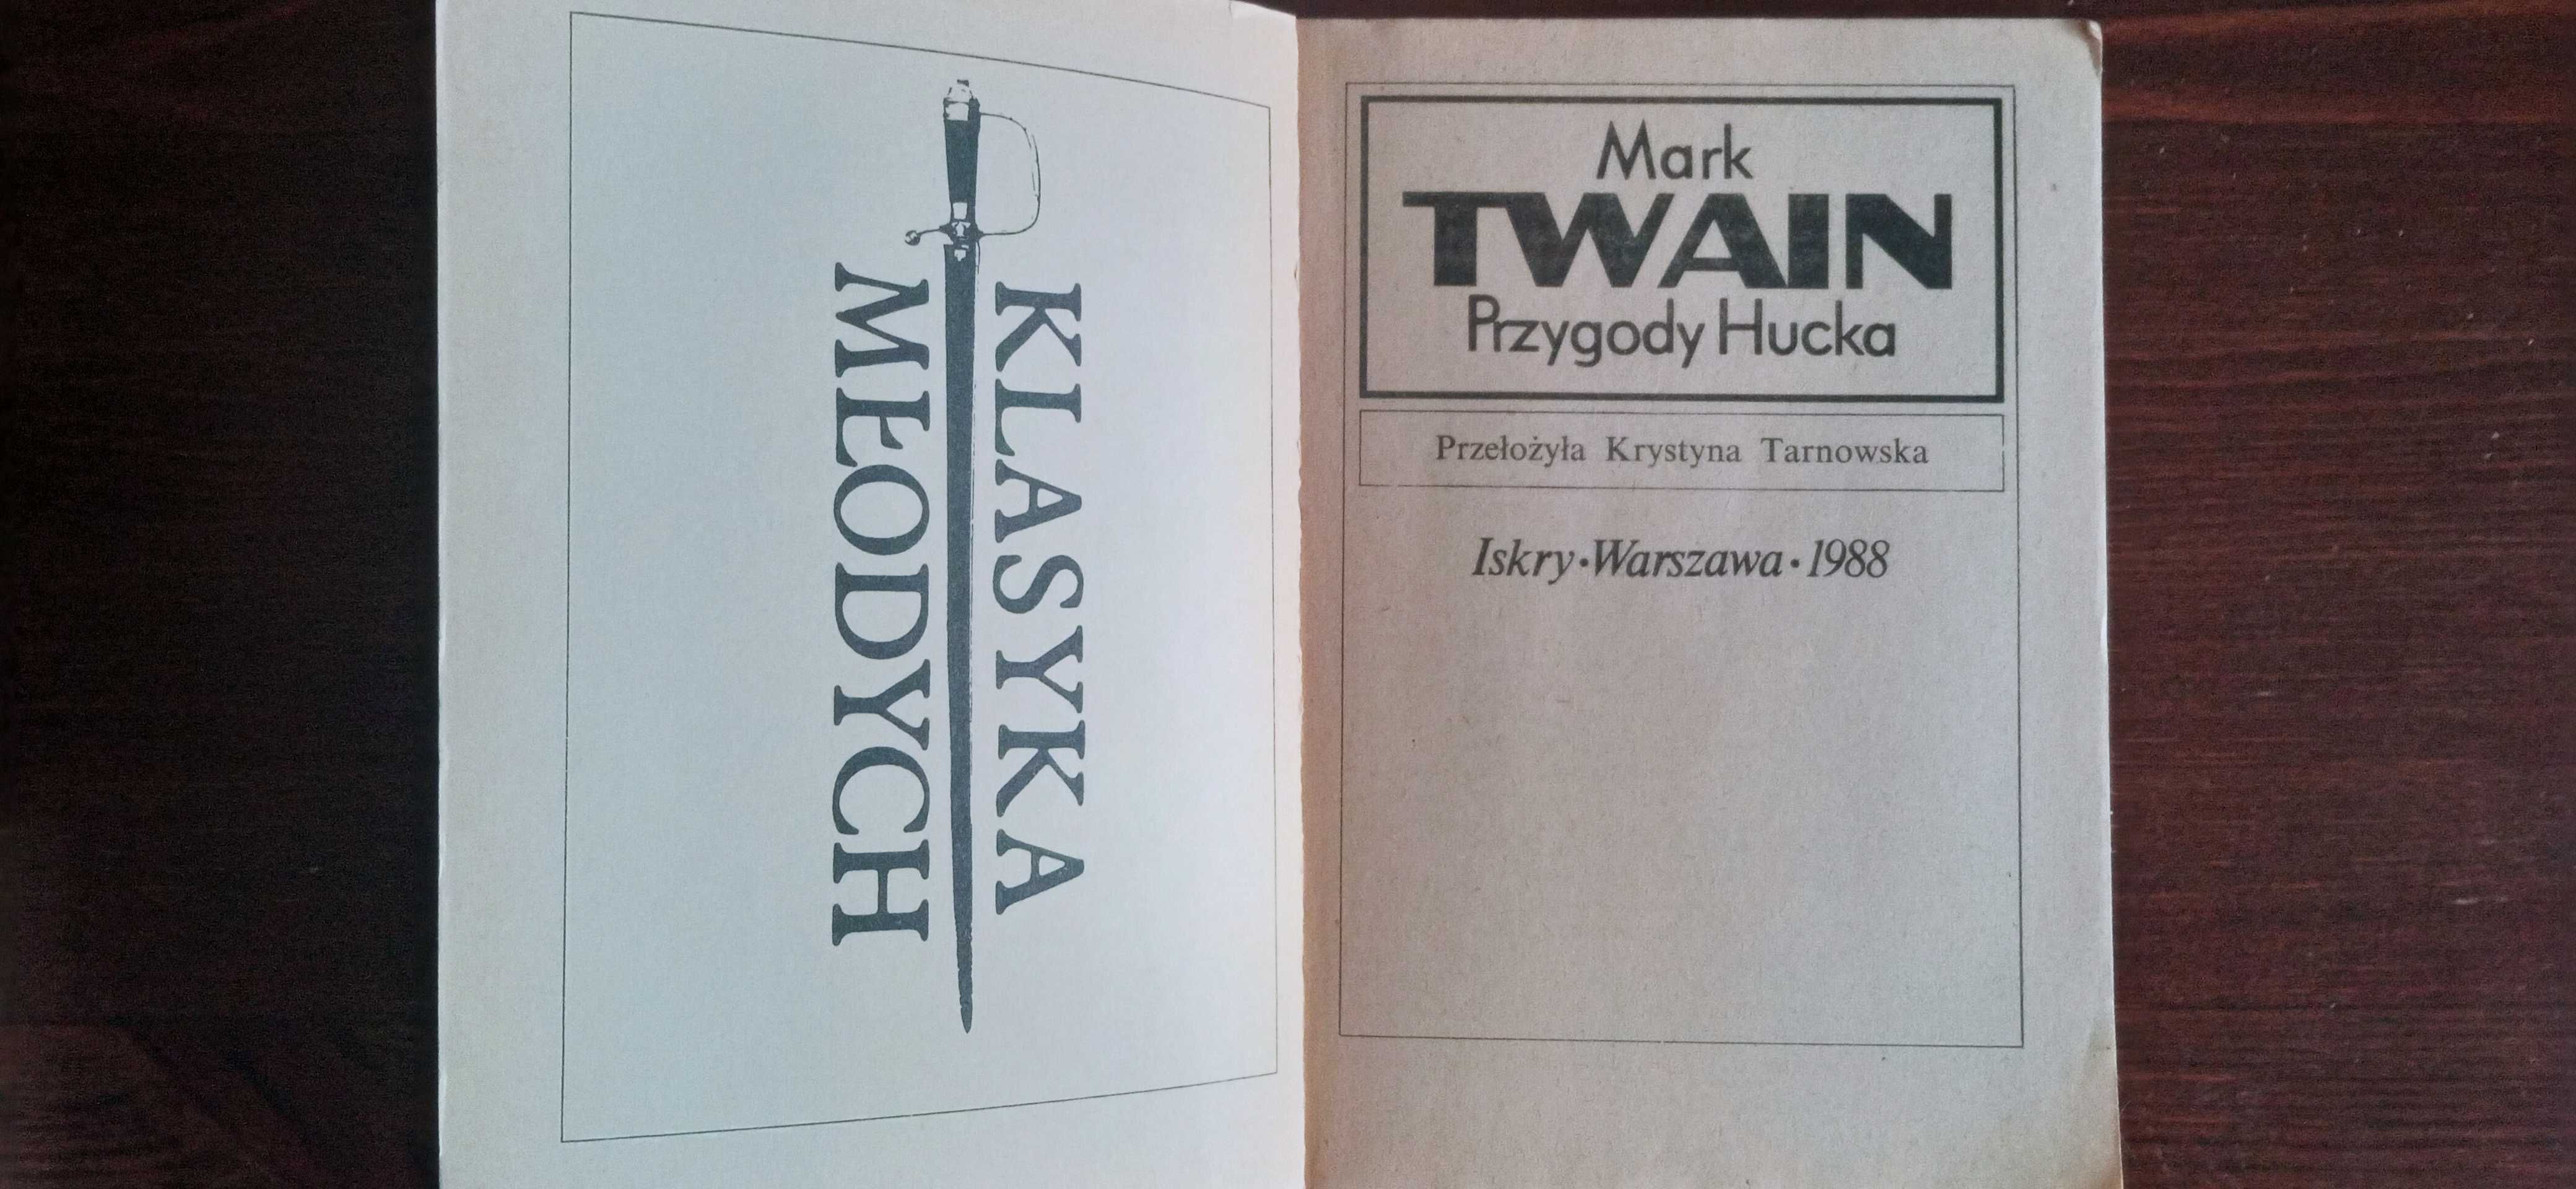 Mark Twain Przygody Hucka